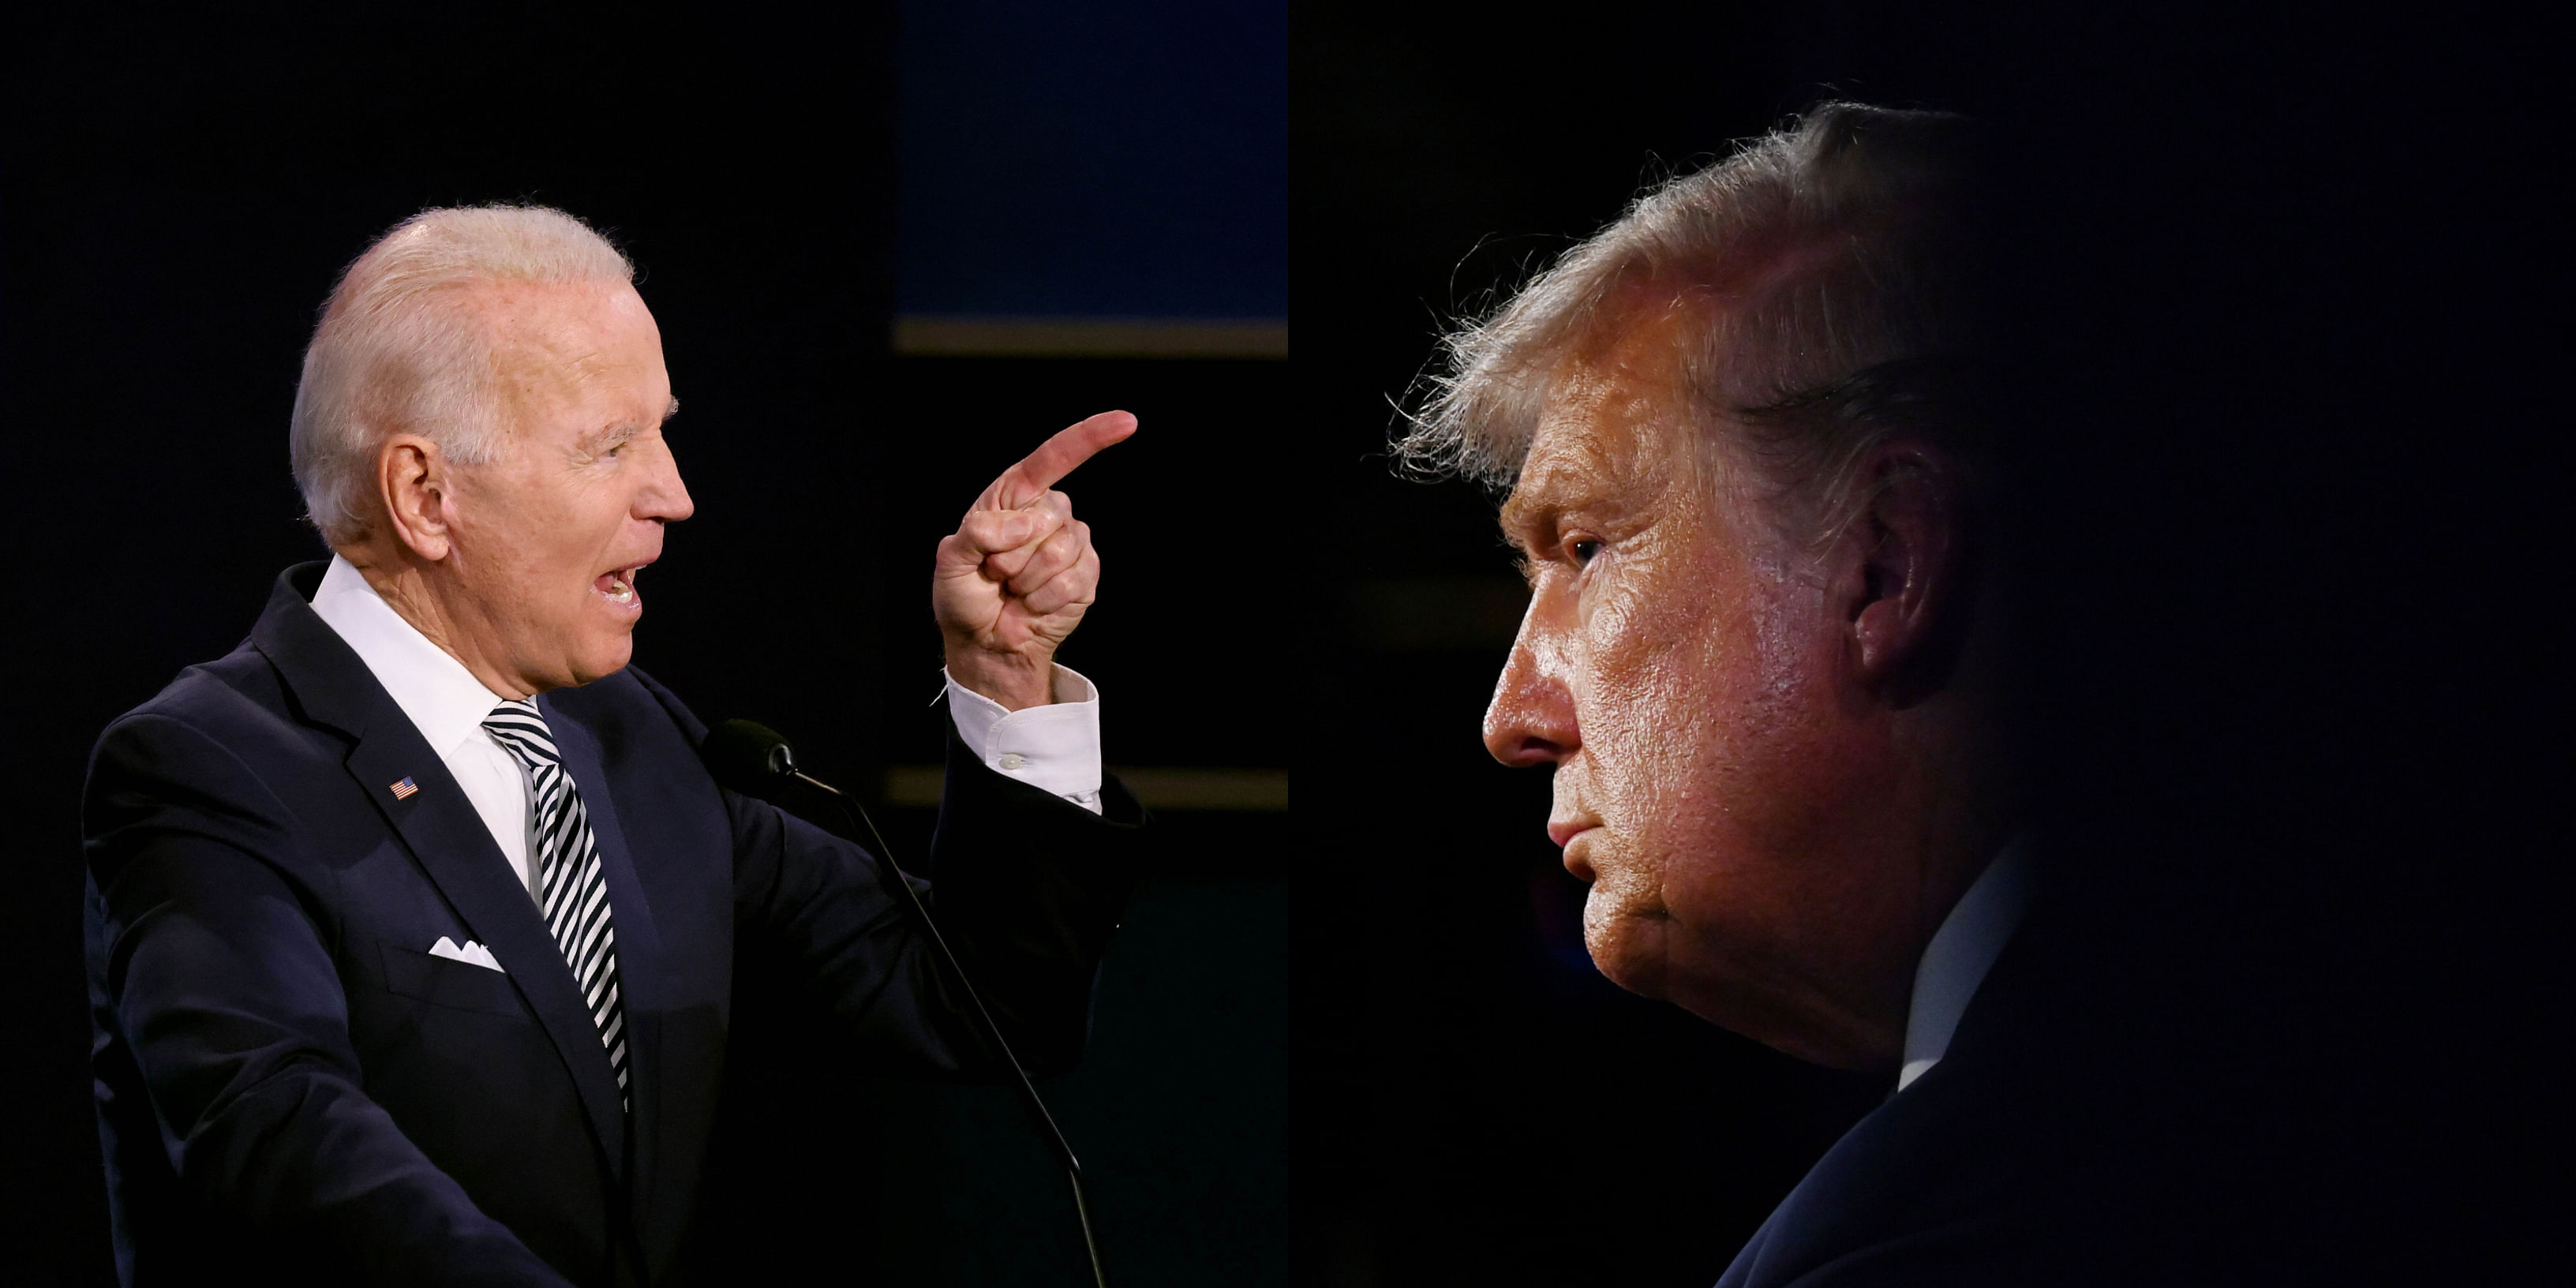 Joe Biden and Donald Trump. Credit: Reuters